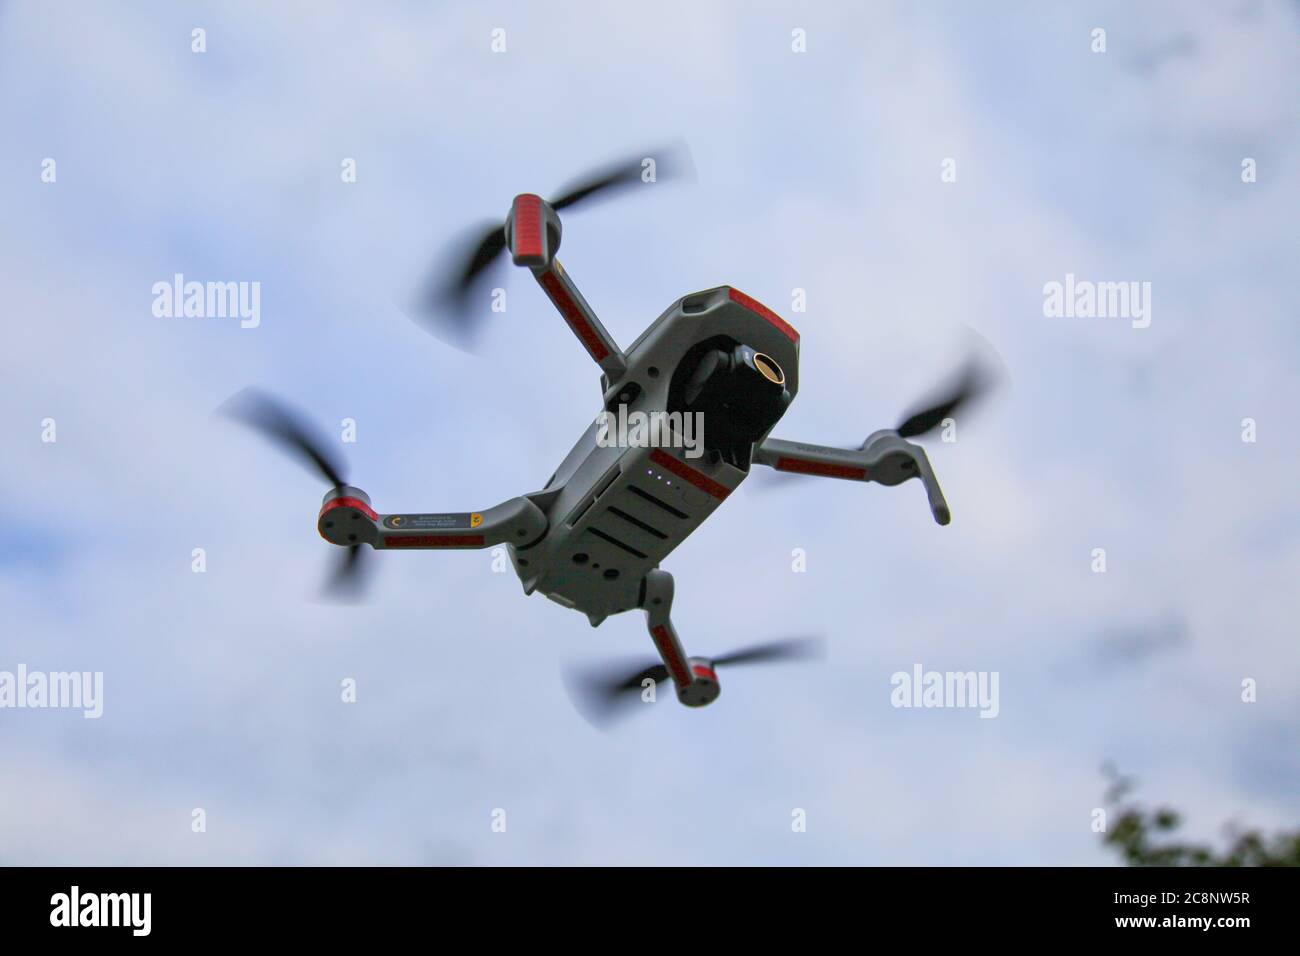 Mavic Mini - DJI, compacto pero potente, Drone con cámara, intuitivo,  avanzado, características, drone increíble, mundo de la fotografía aérea,  palas de vuelo Fotografía de stock - Alamy